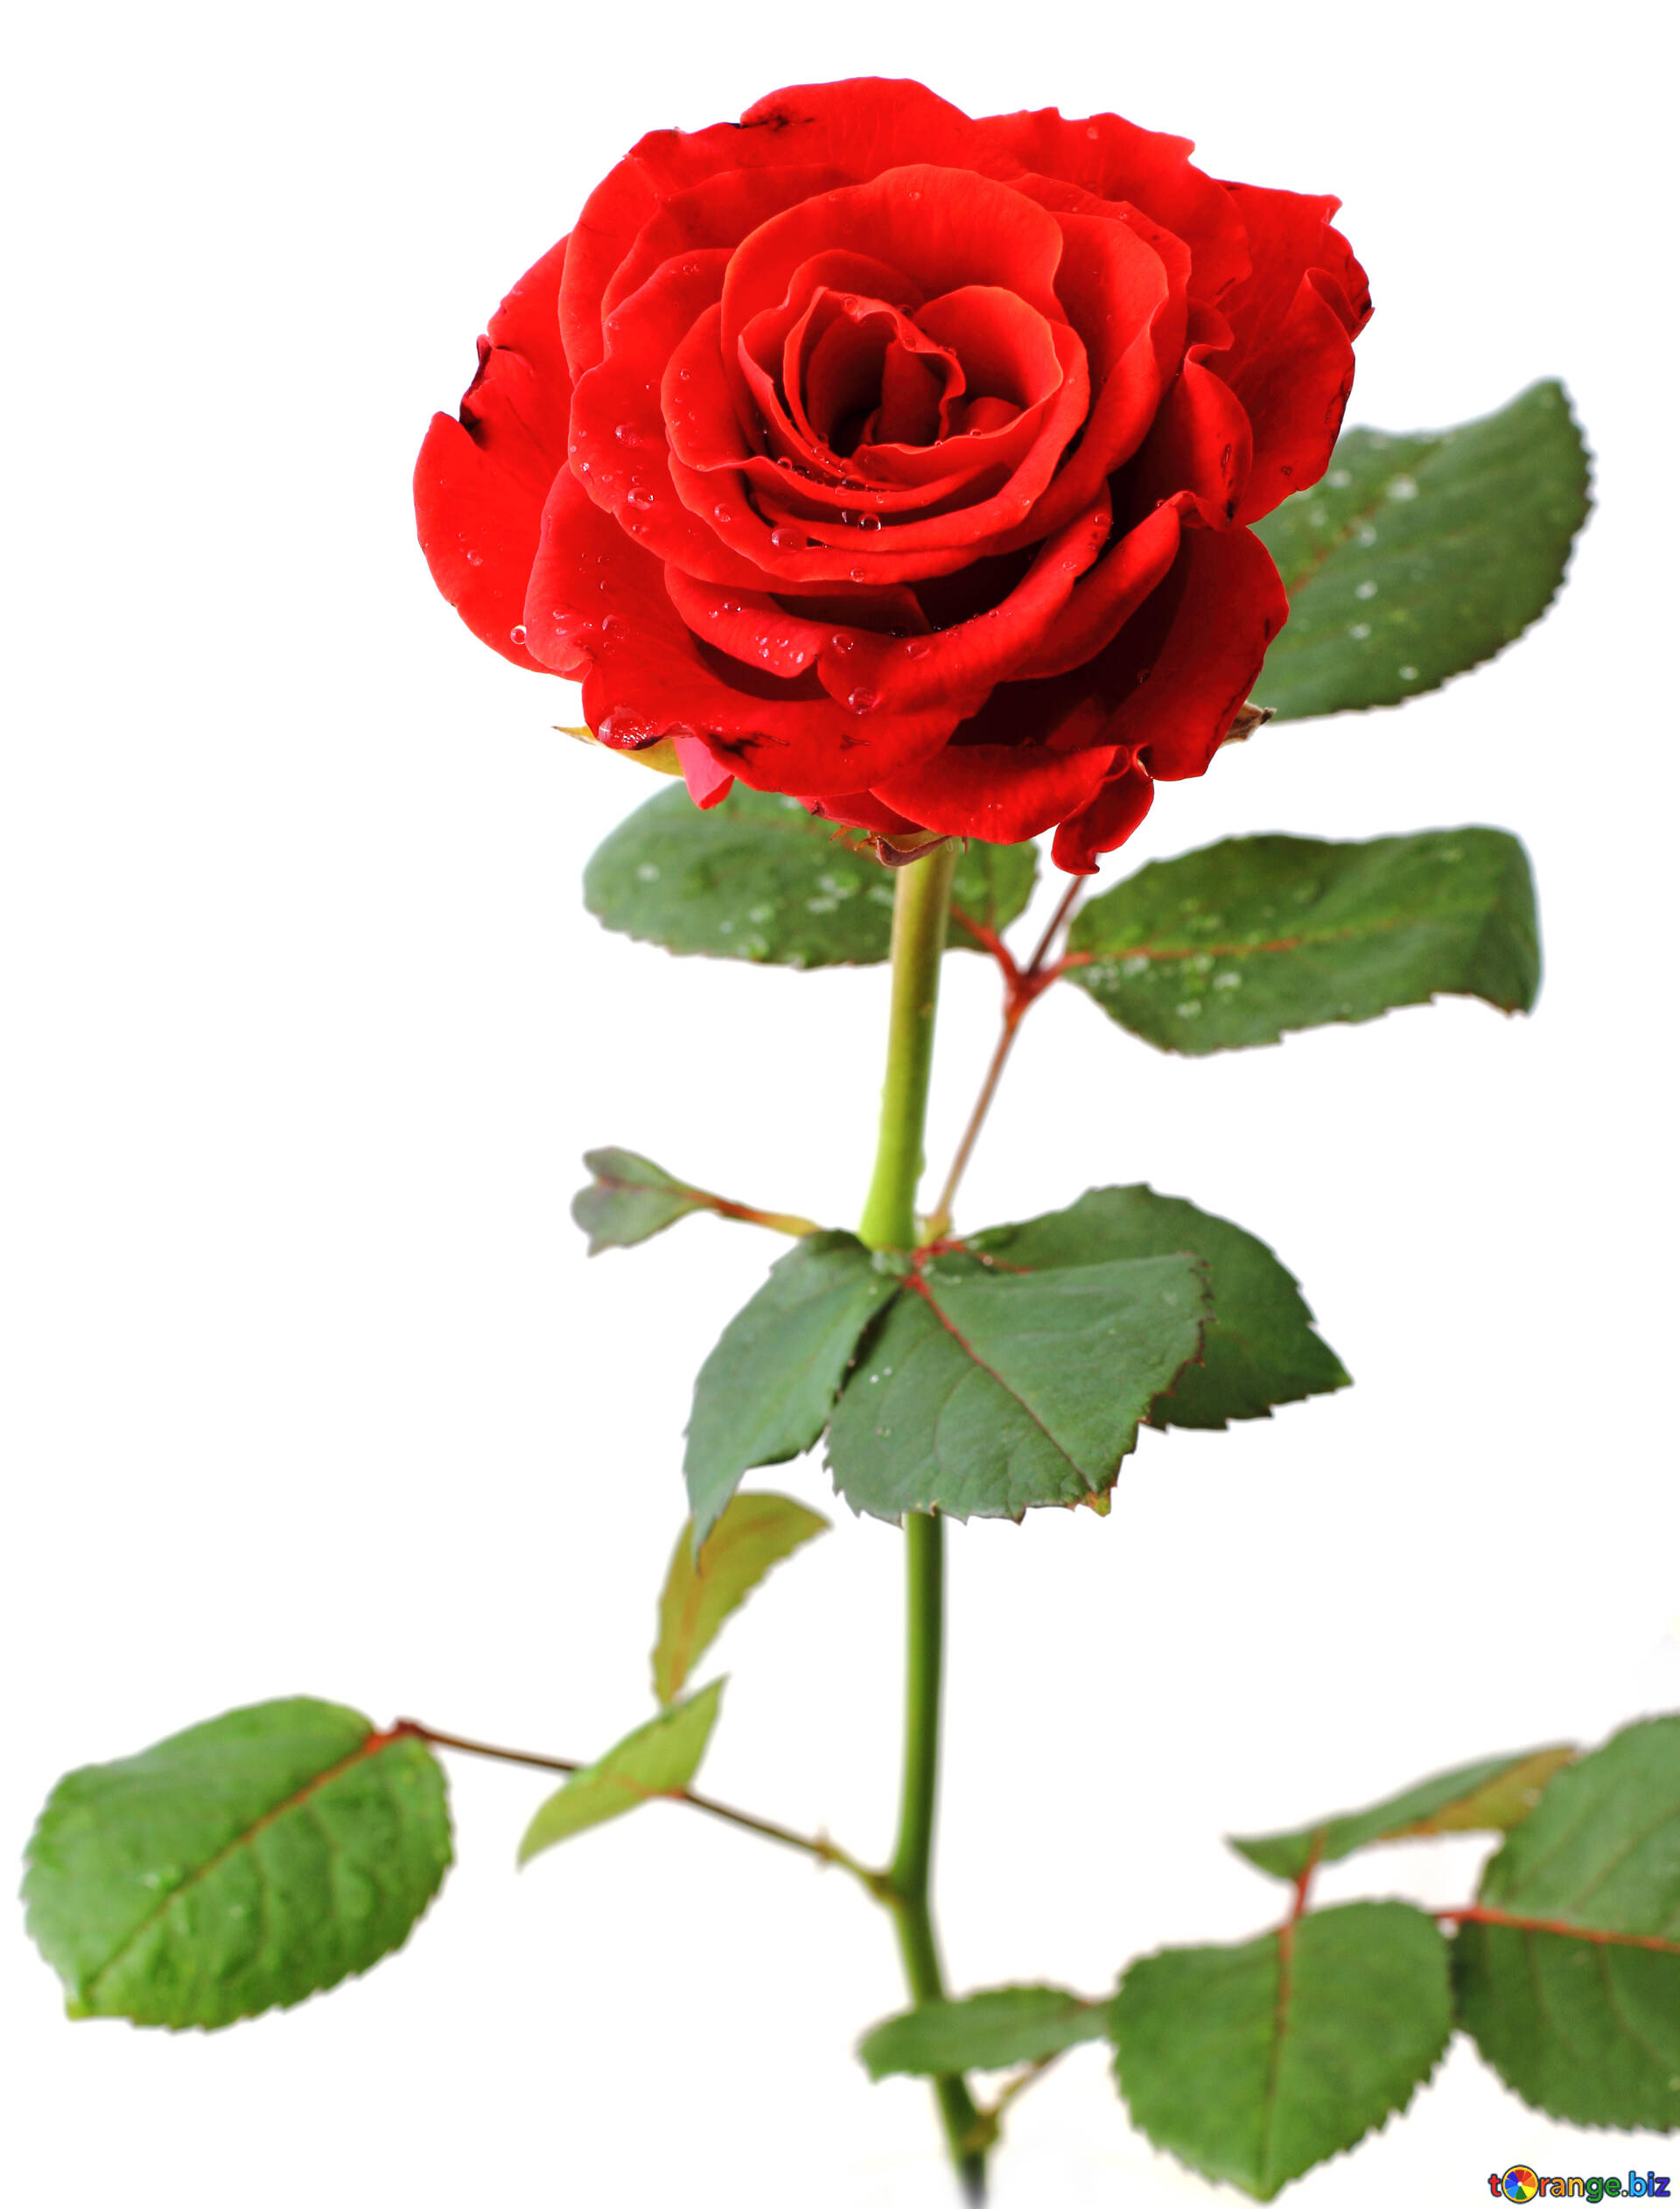 Hoa hồng - loài hoa tượng trưng cho tình yêu và sự đẹp đẽ. Hãy xem hình ảnh về hoa hồng để được ngập tràn trong màu sắc hương thơm của loài hoa quý giá này.